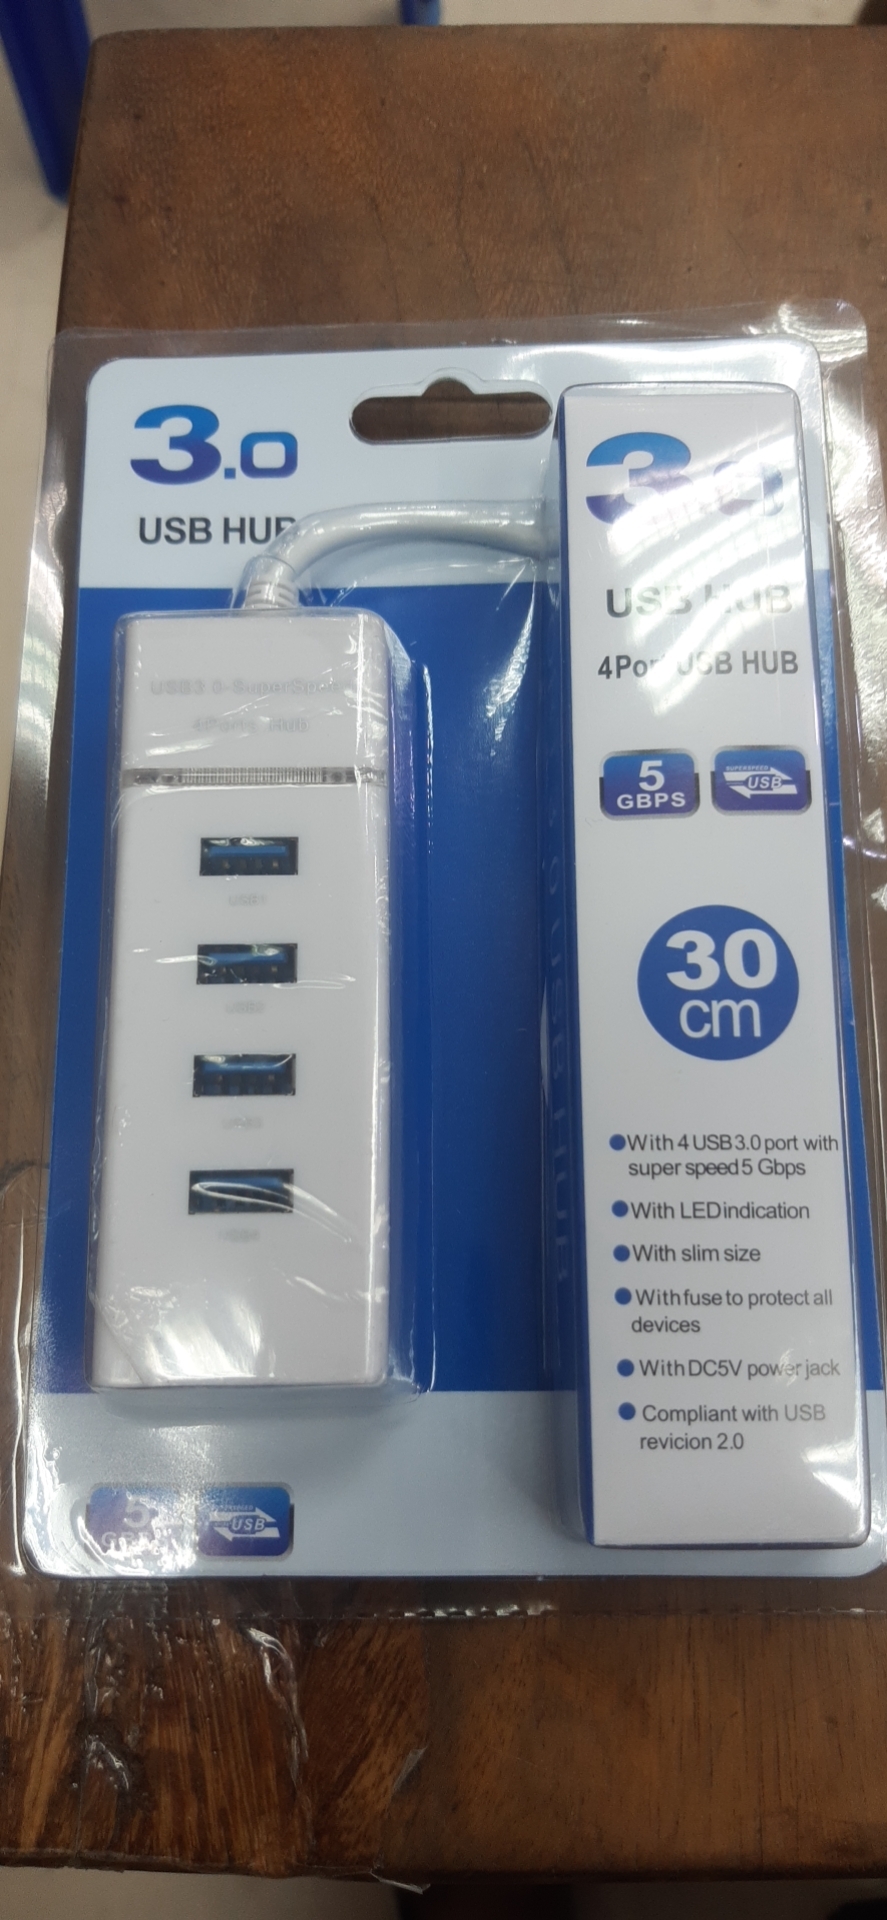 USB ความเร็วสูง 4 พอร์ตฮับ USB 3.0 USB HUB Adapter สำหรับ PC แล็ปท็อปอุปกรณ์เสริมคอมพิวเตอร์